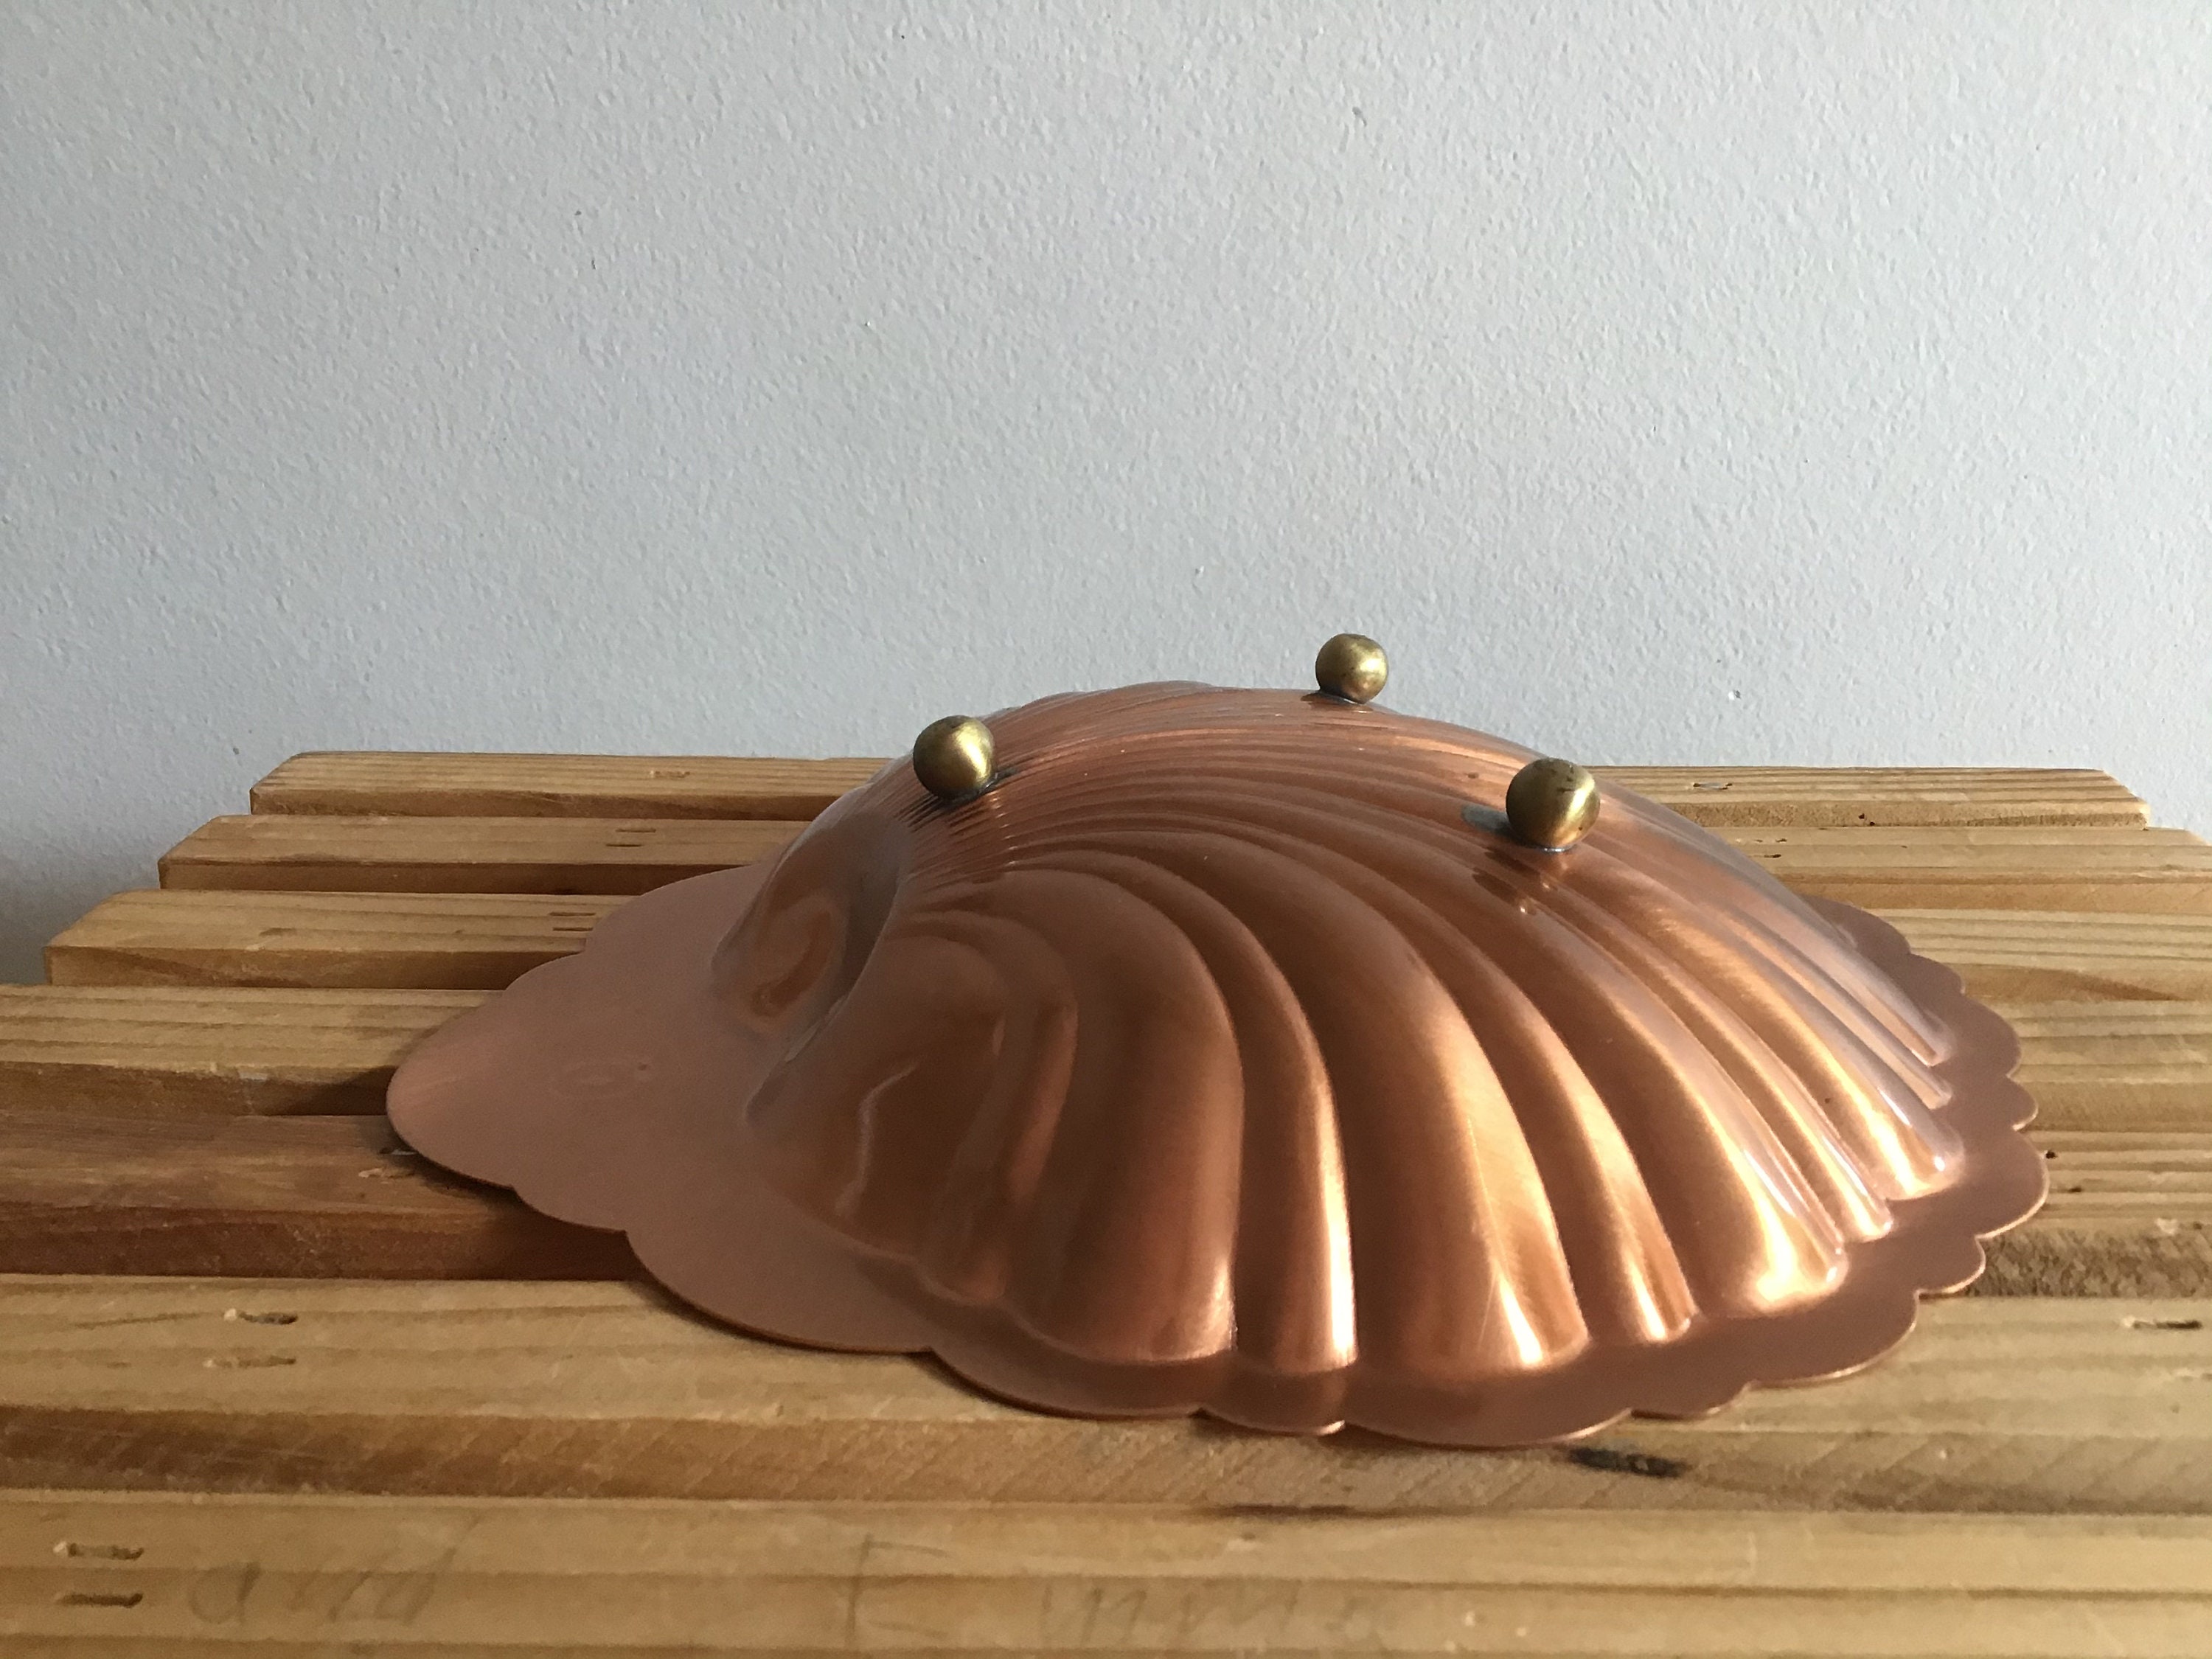 Vintage Copper Shell Trinket Dish or Key Holder Metal Home 